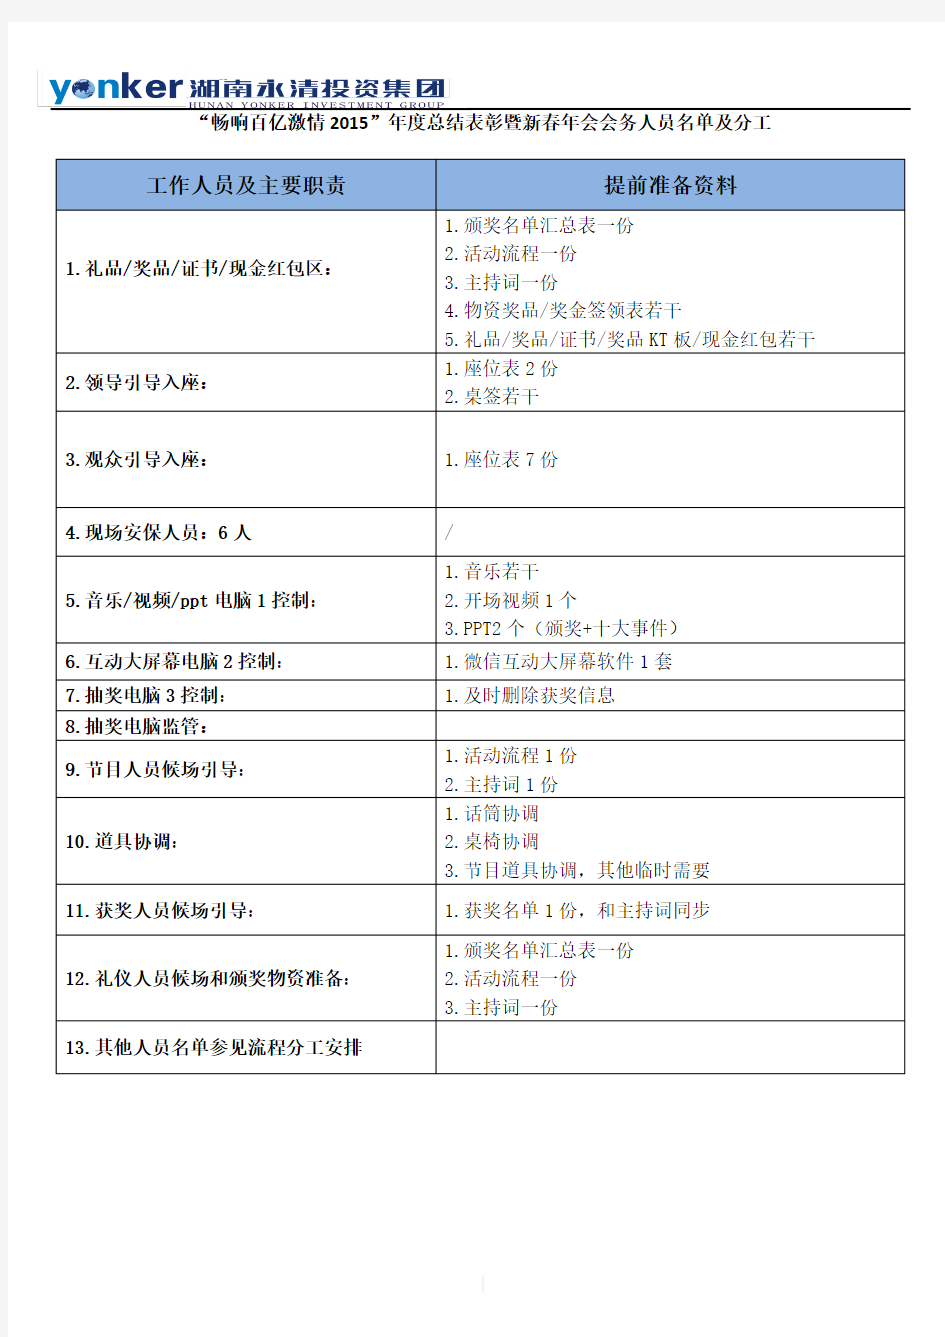 集团公司年会会务人员名单及分工(模板)